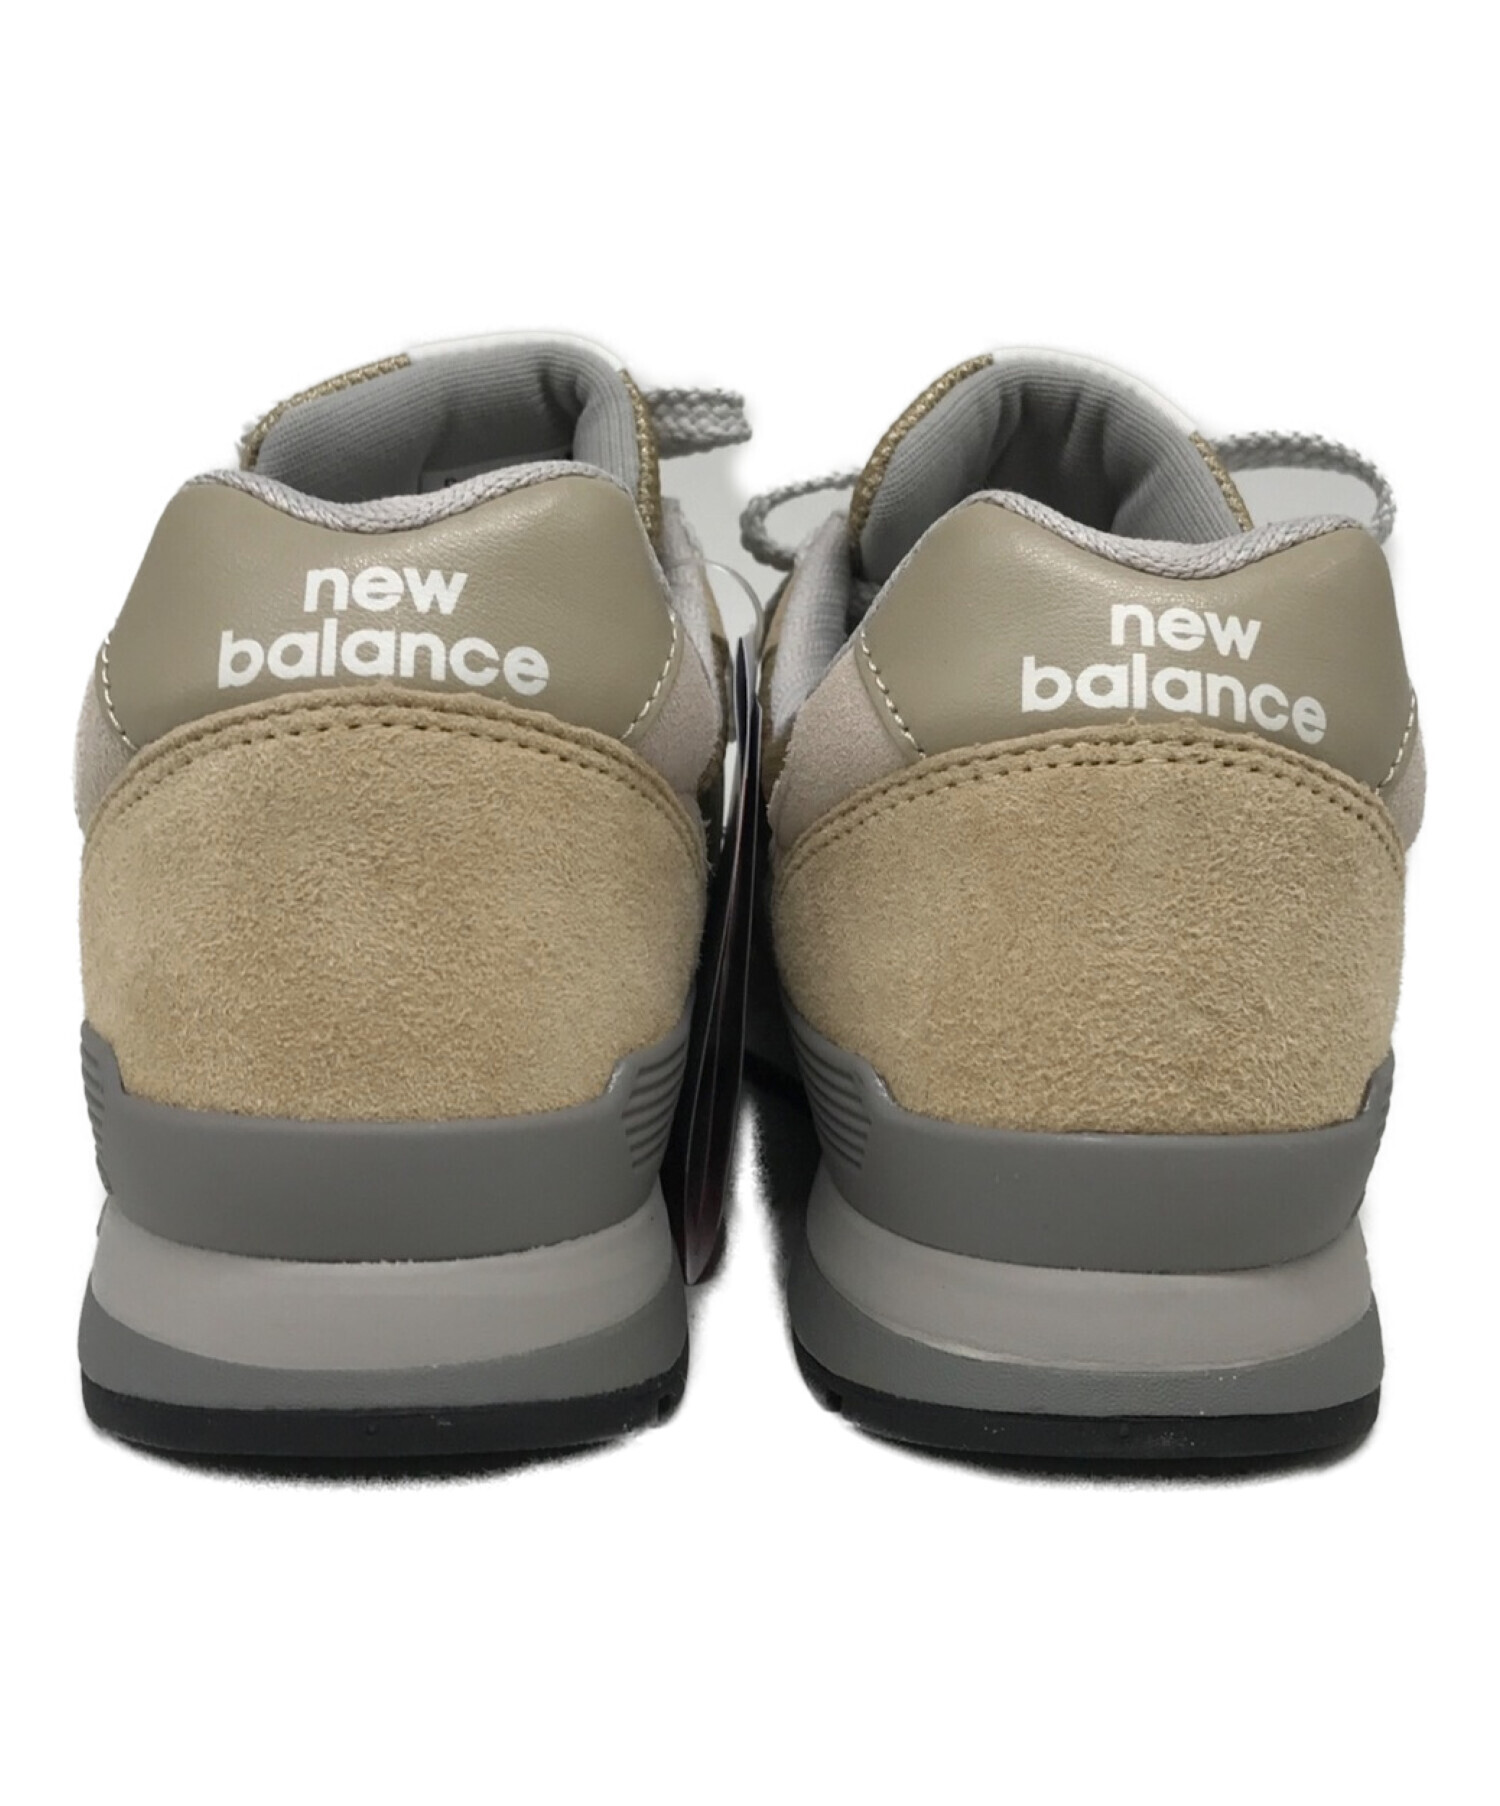 NEW BALANCE (ニューバランス) スニーカー / CM996SHT ベージュ サイズ:26cm 未使用品